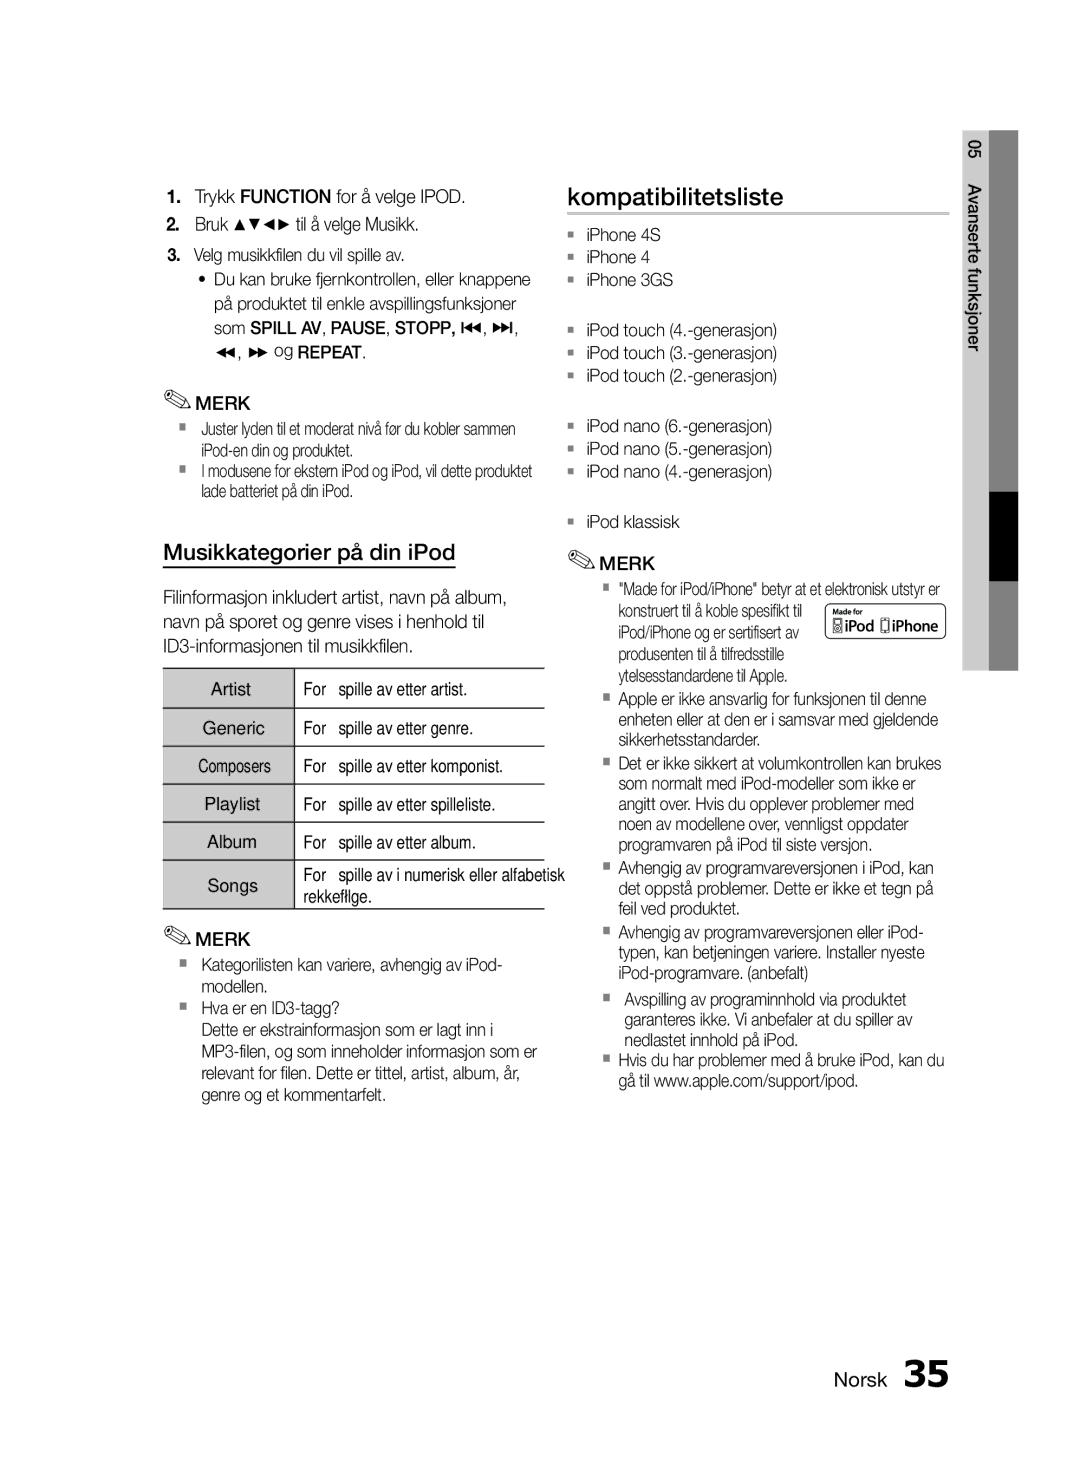 Samsung MM-E460D/XE manual Kompatibilitetsliste, Musikkategorier på din iPod 